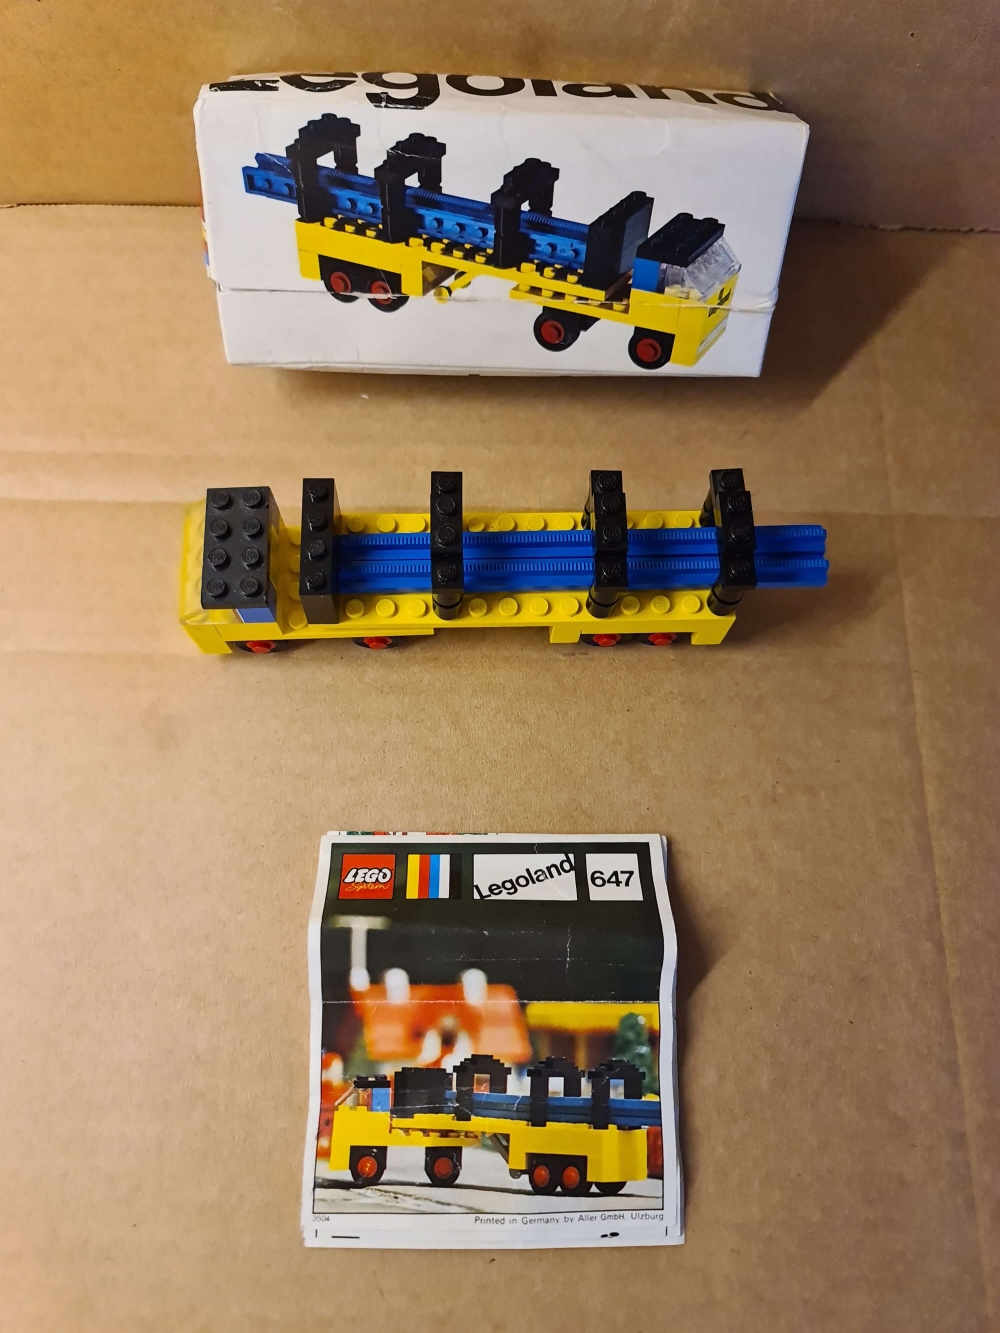 Sett 647 fra Lego Legoland serien.
Fint sett. Komplett med manual og eske.